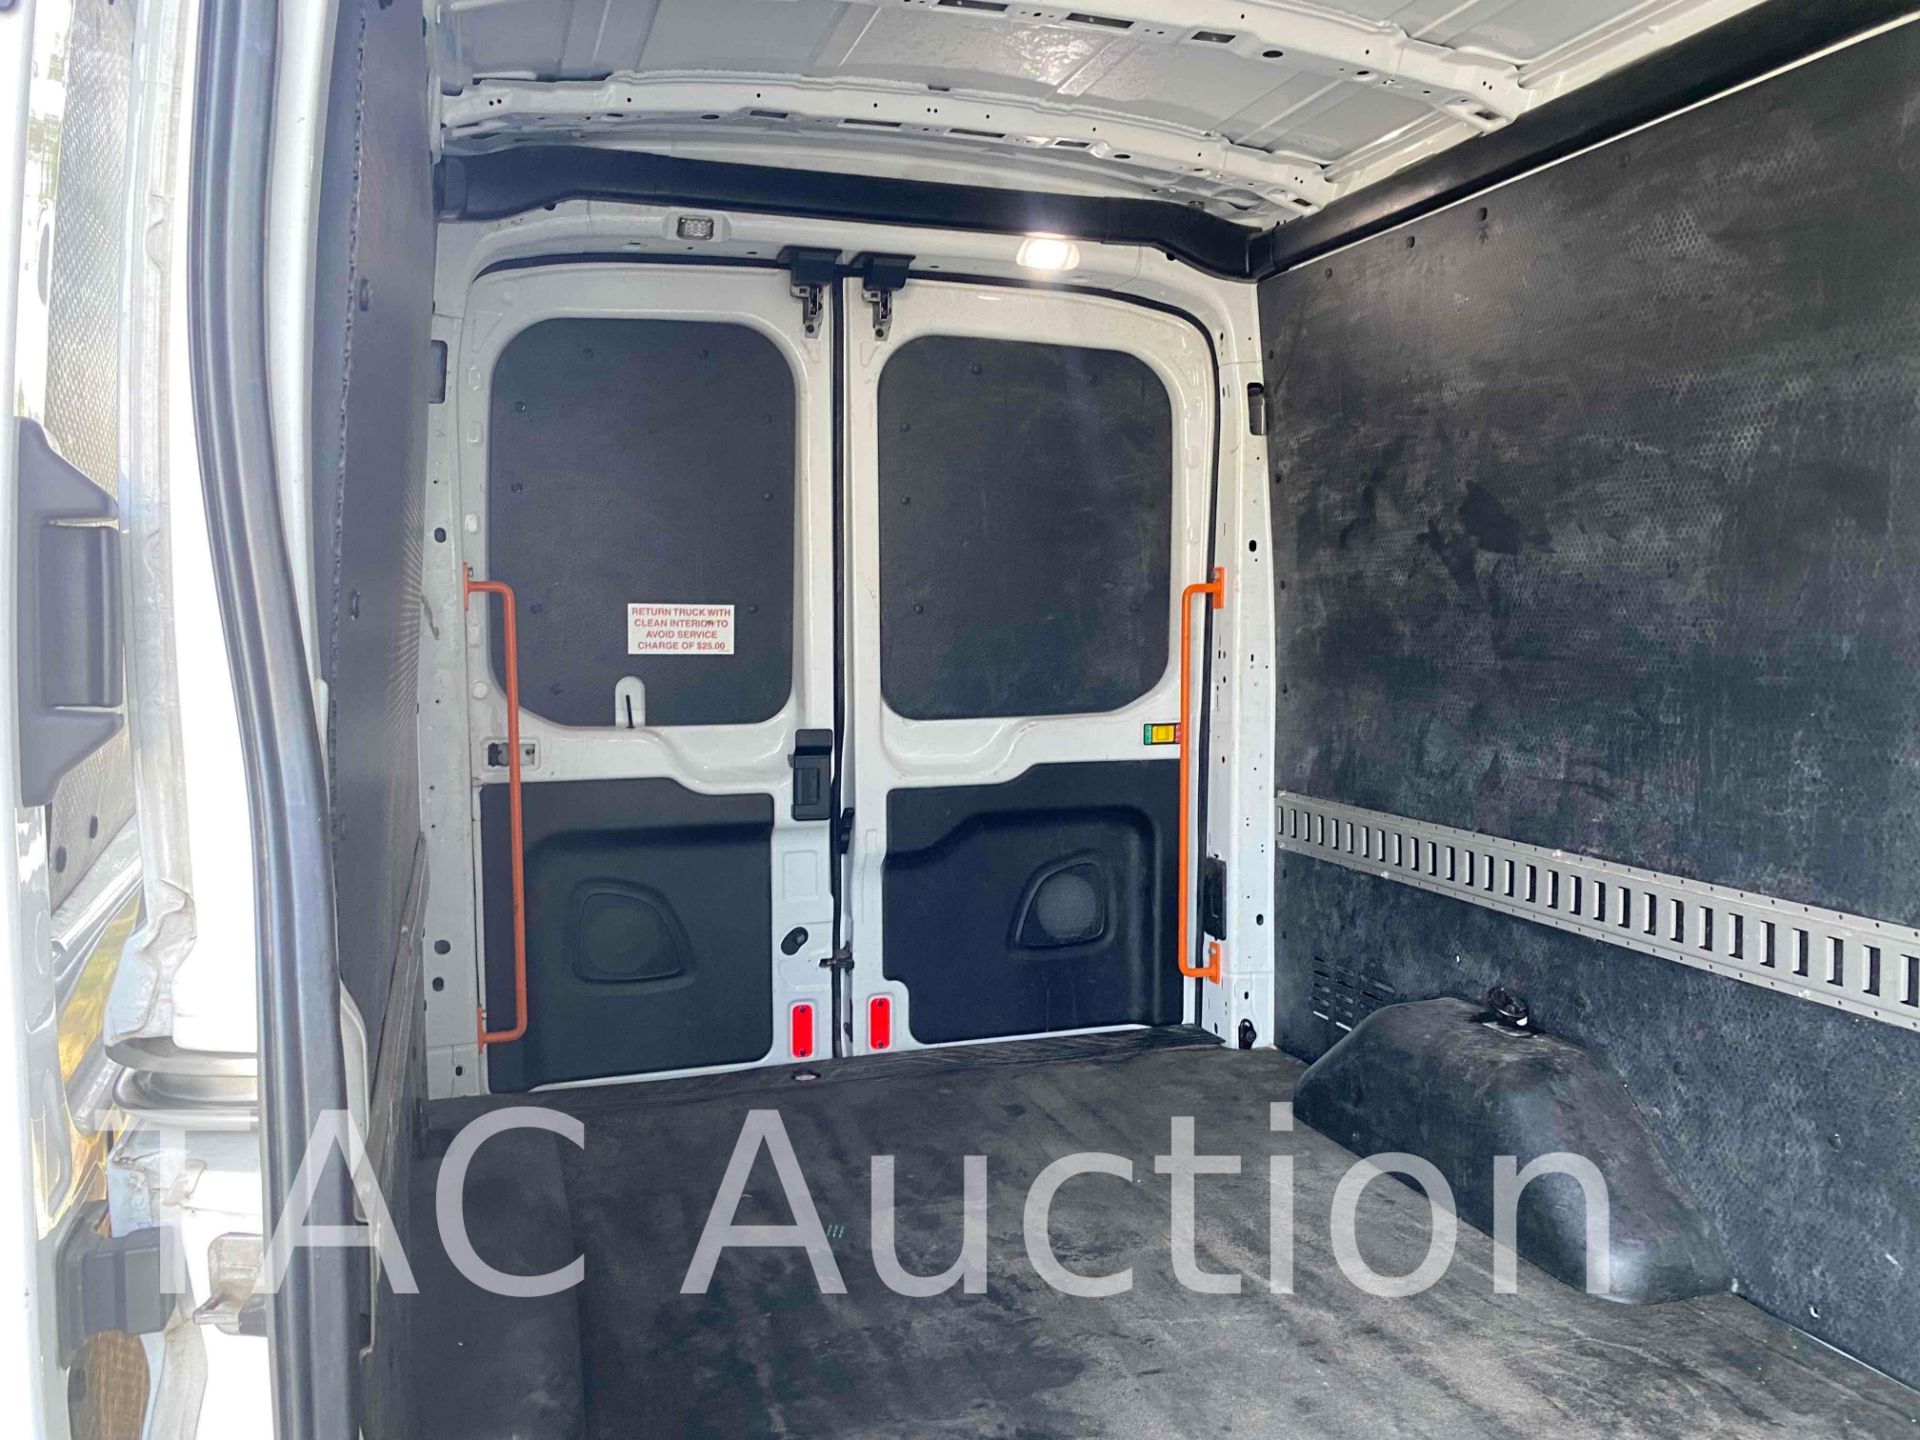 2019 Ford Transit 150 Cargo Van - Image 19 of 51